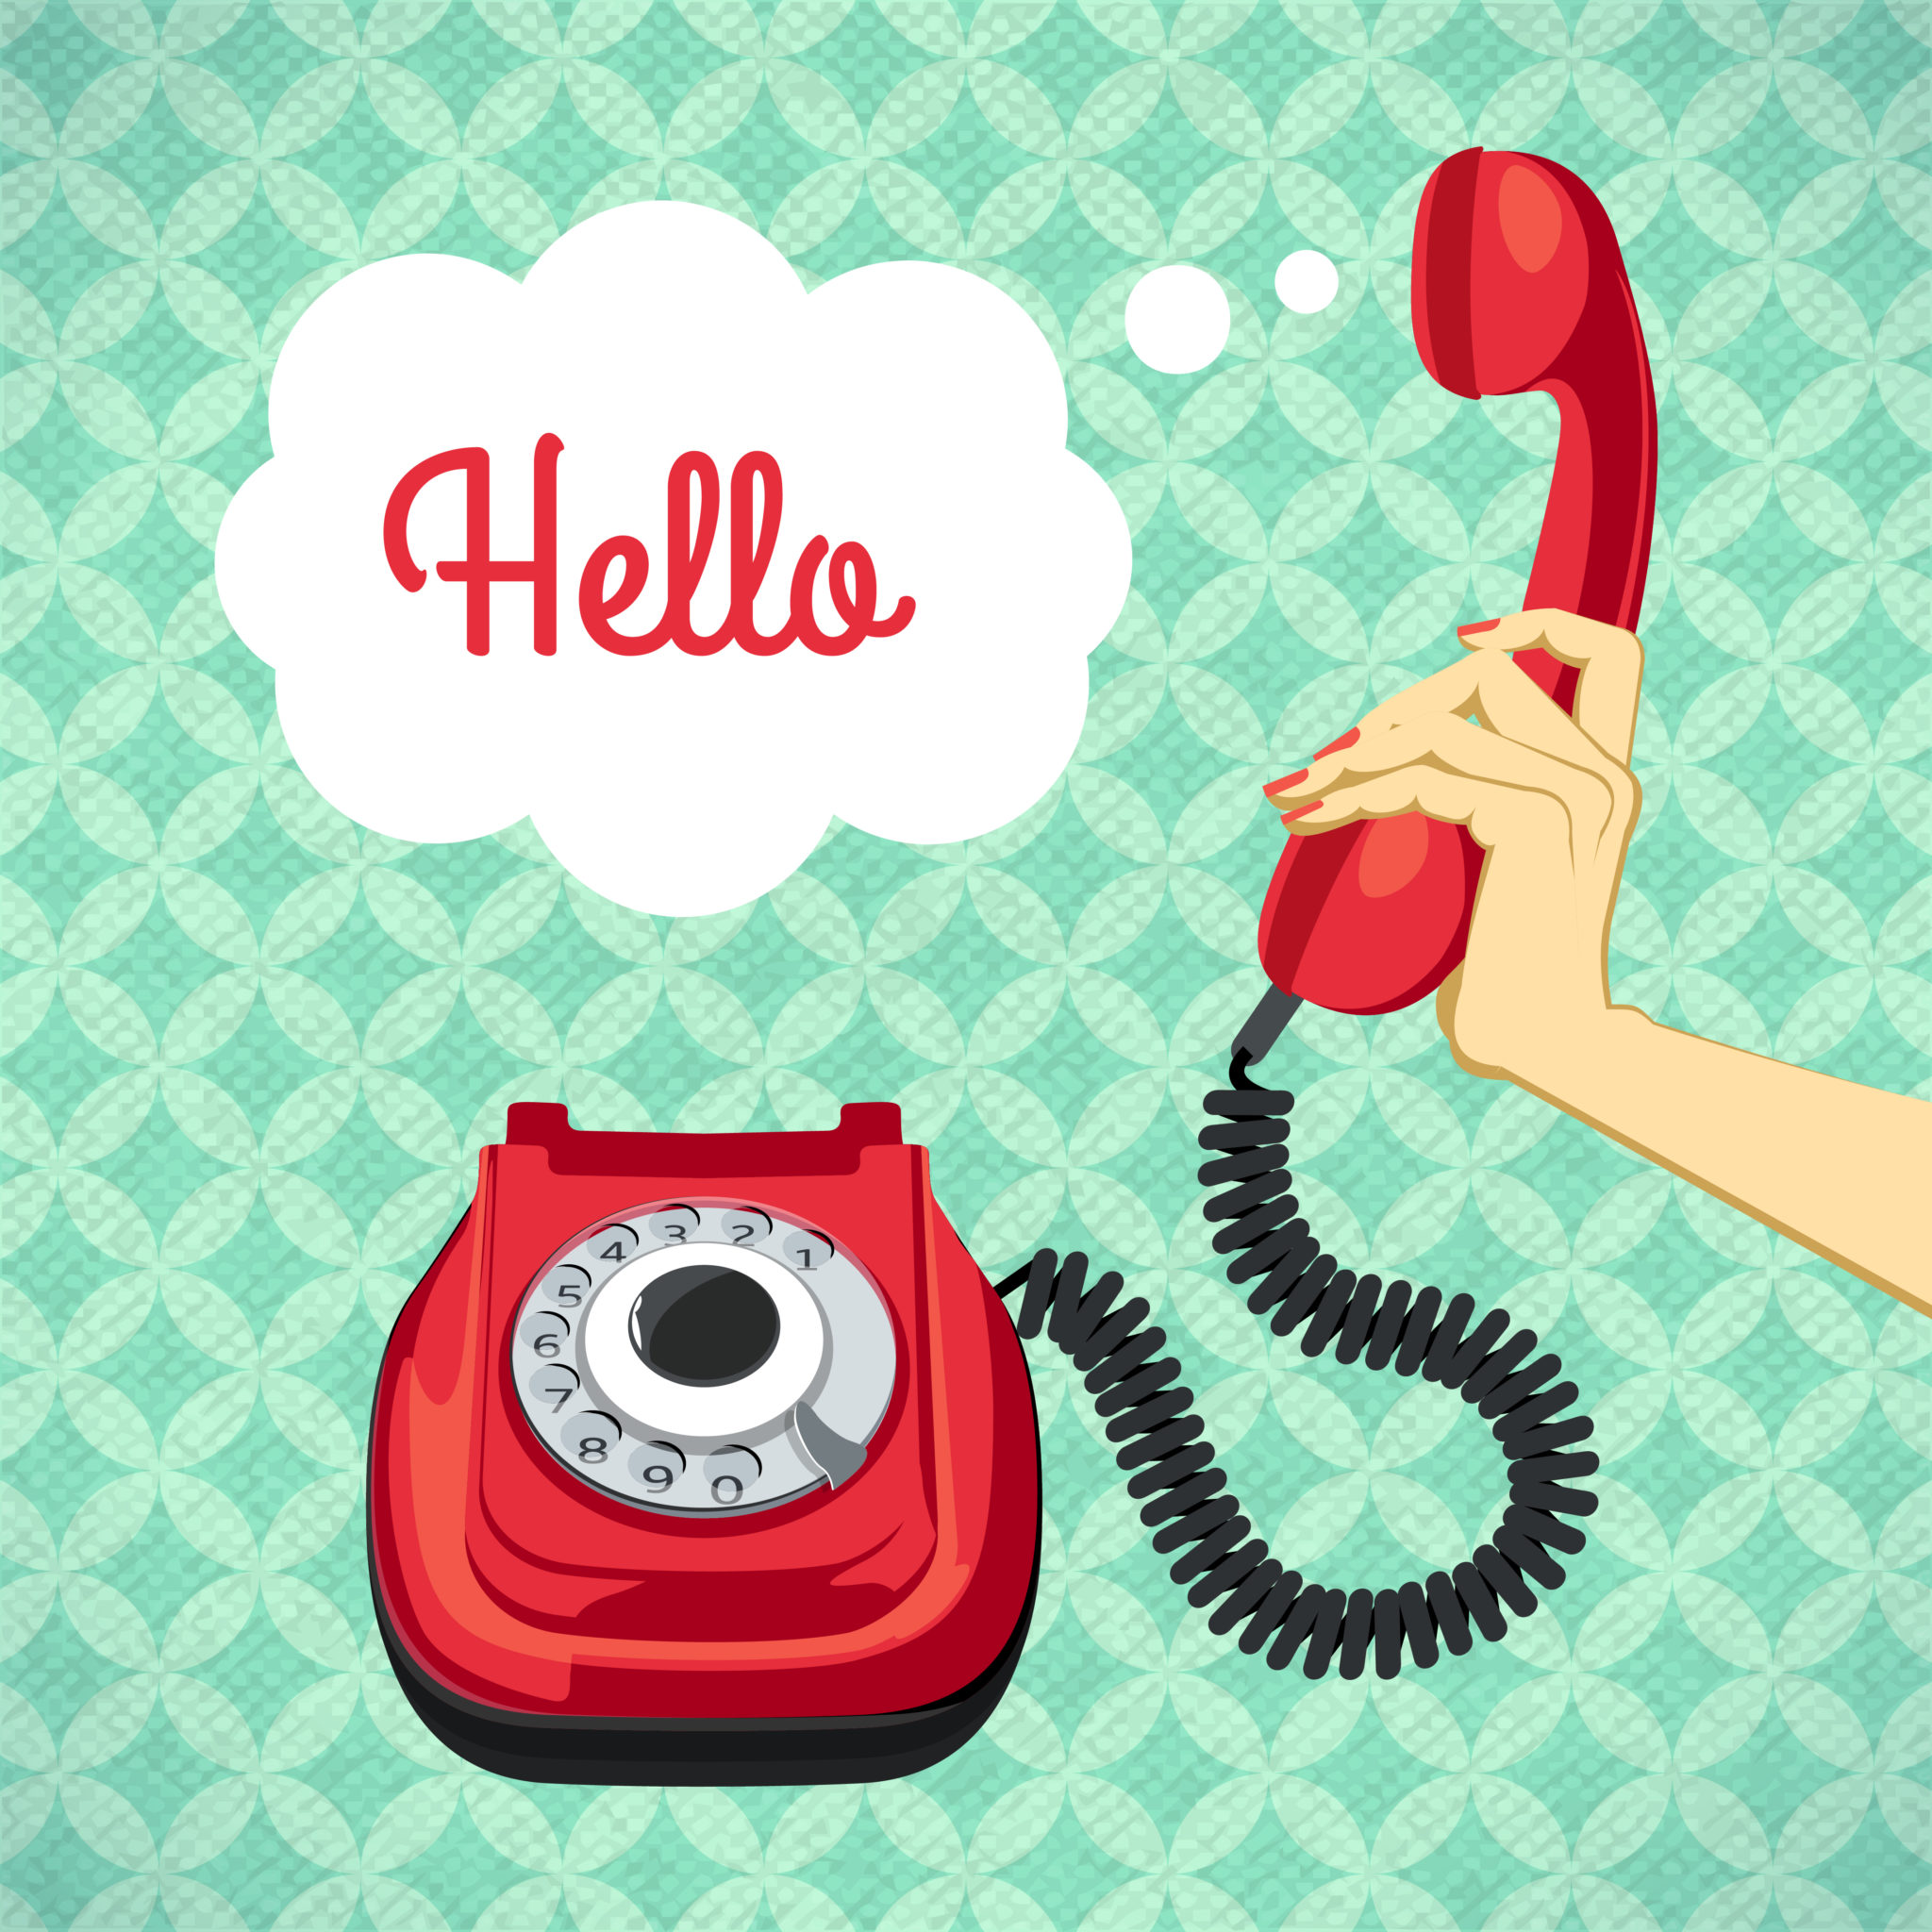 Llamar por teléfono en inglés | Profesionistas
